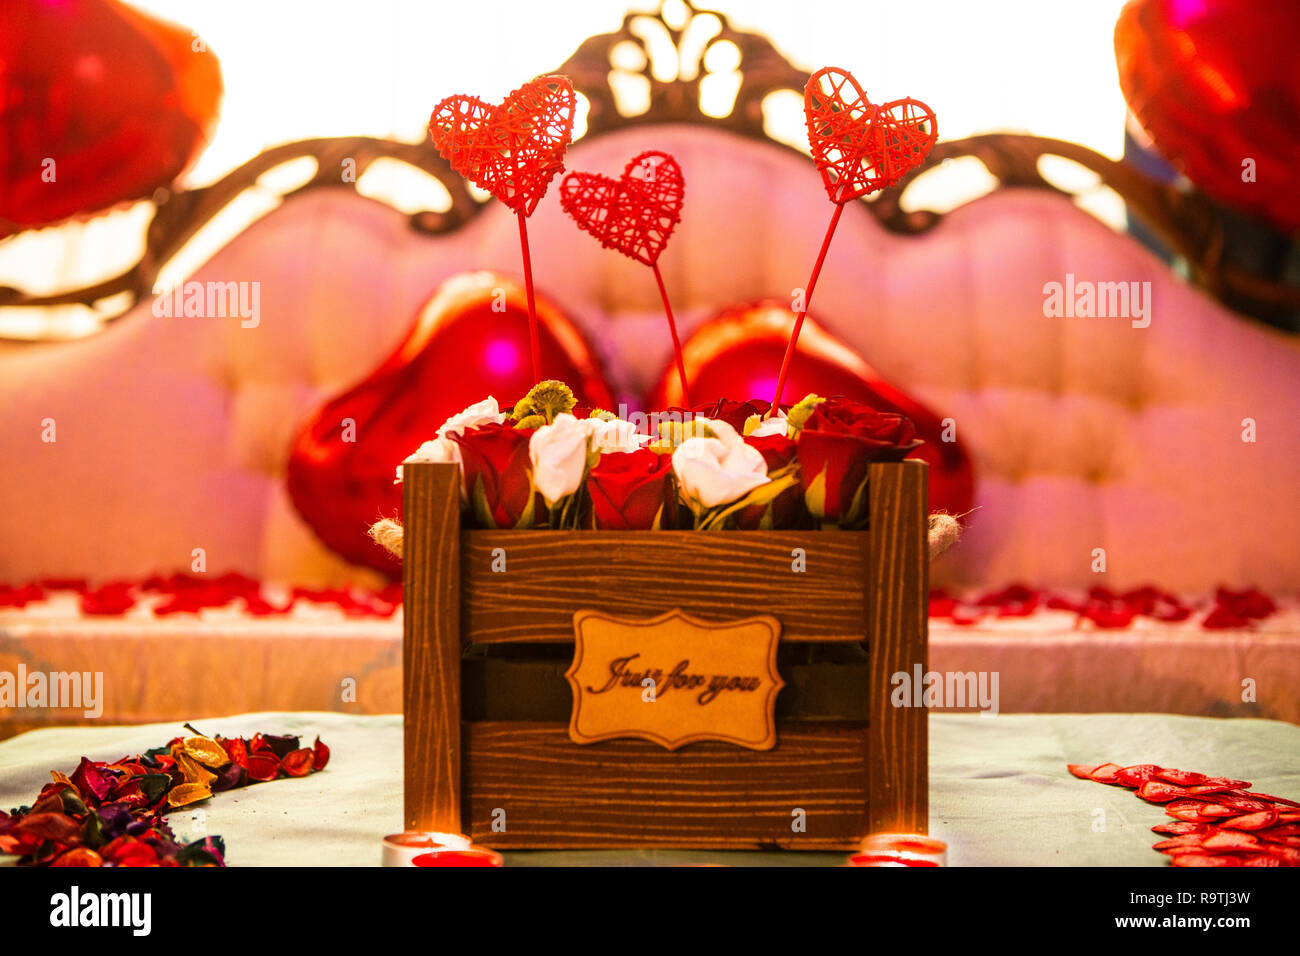 Romantischer Hochzeitstag Dekoration Stockfoto